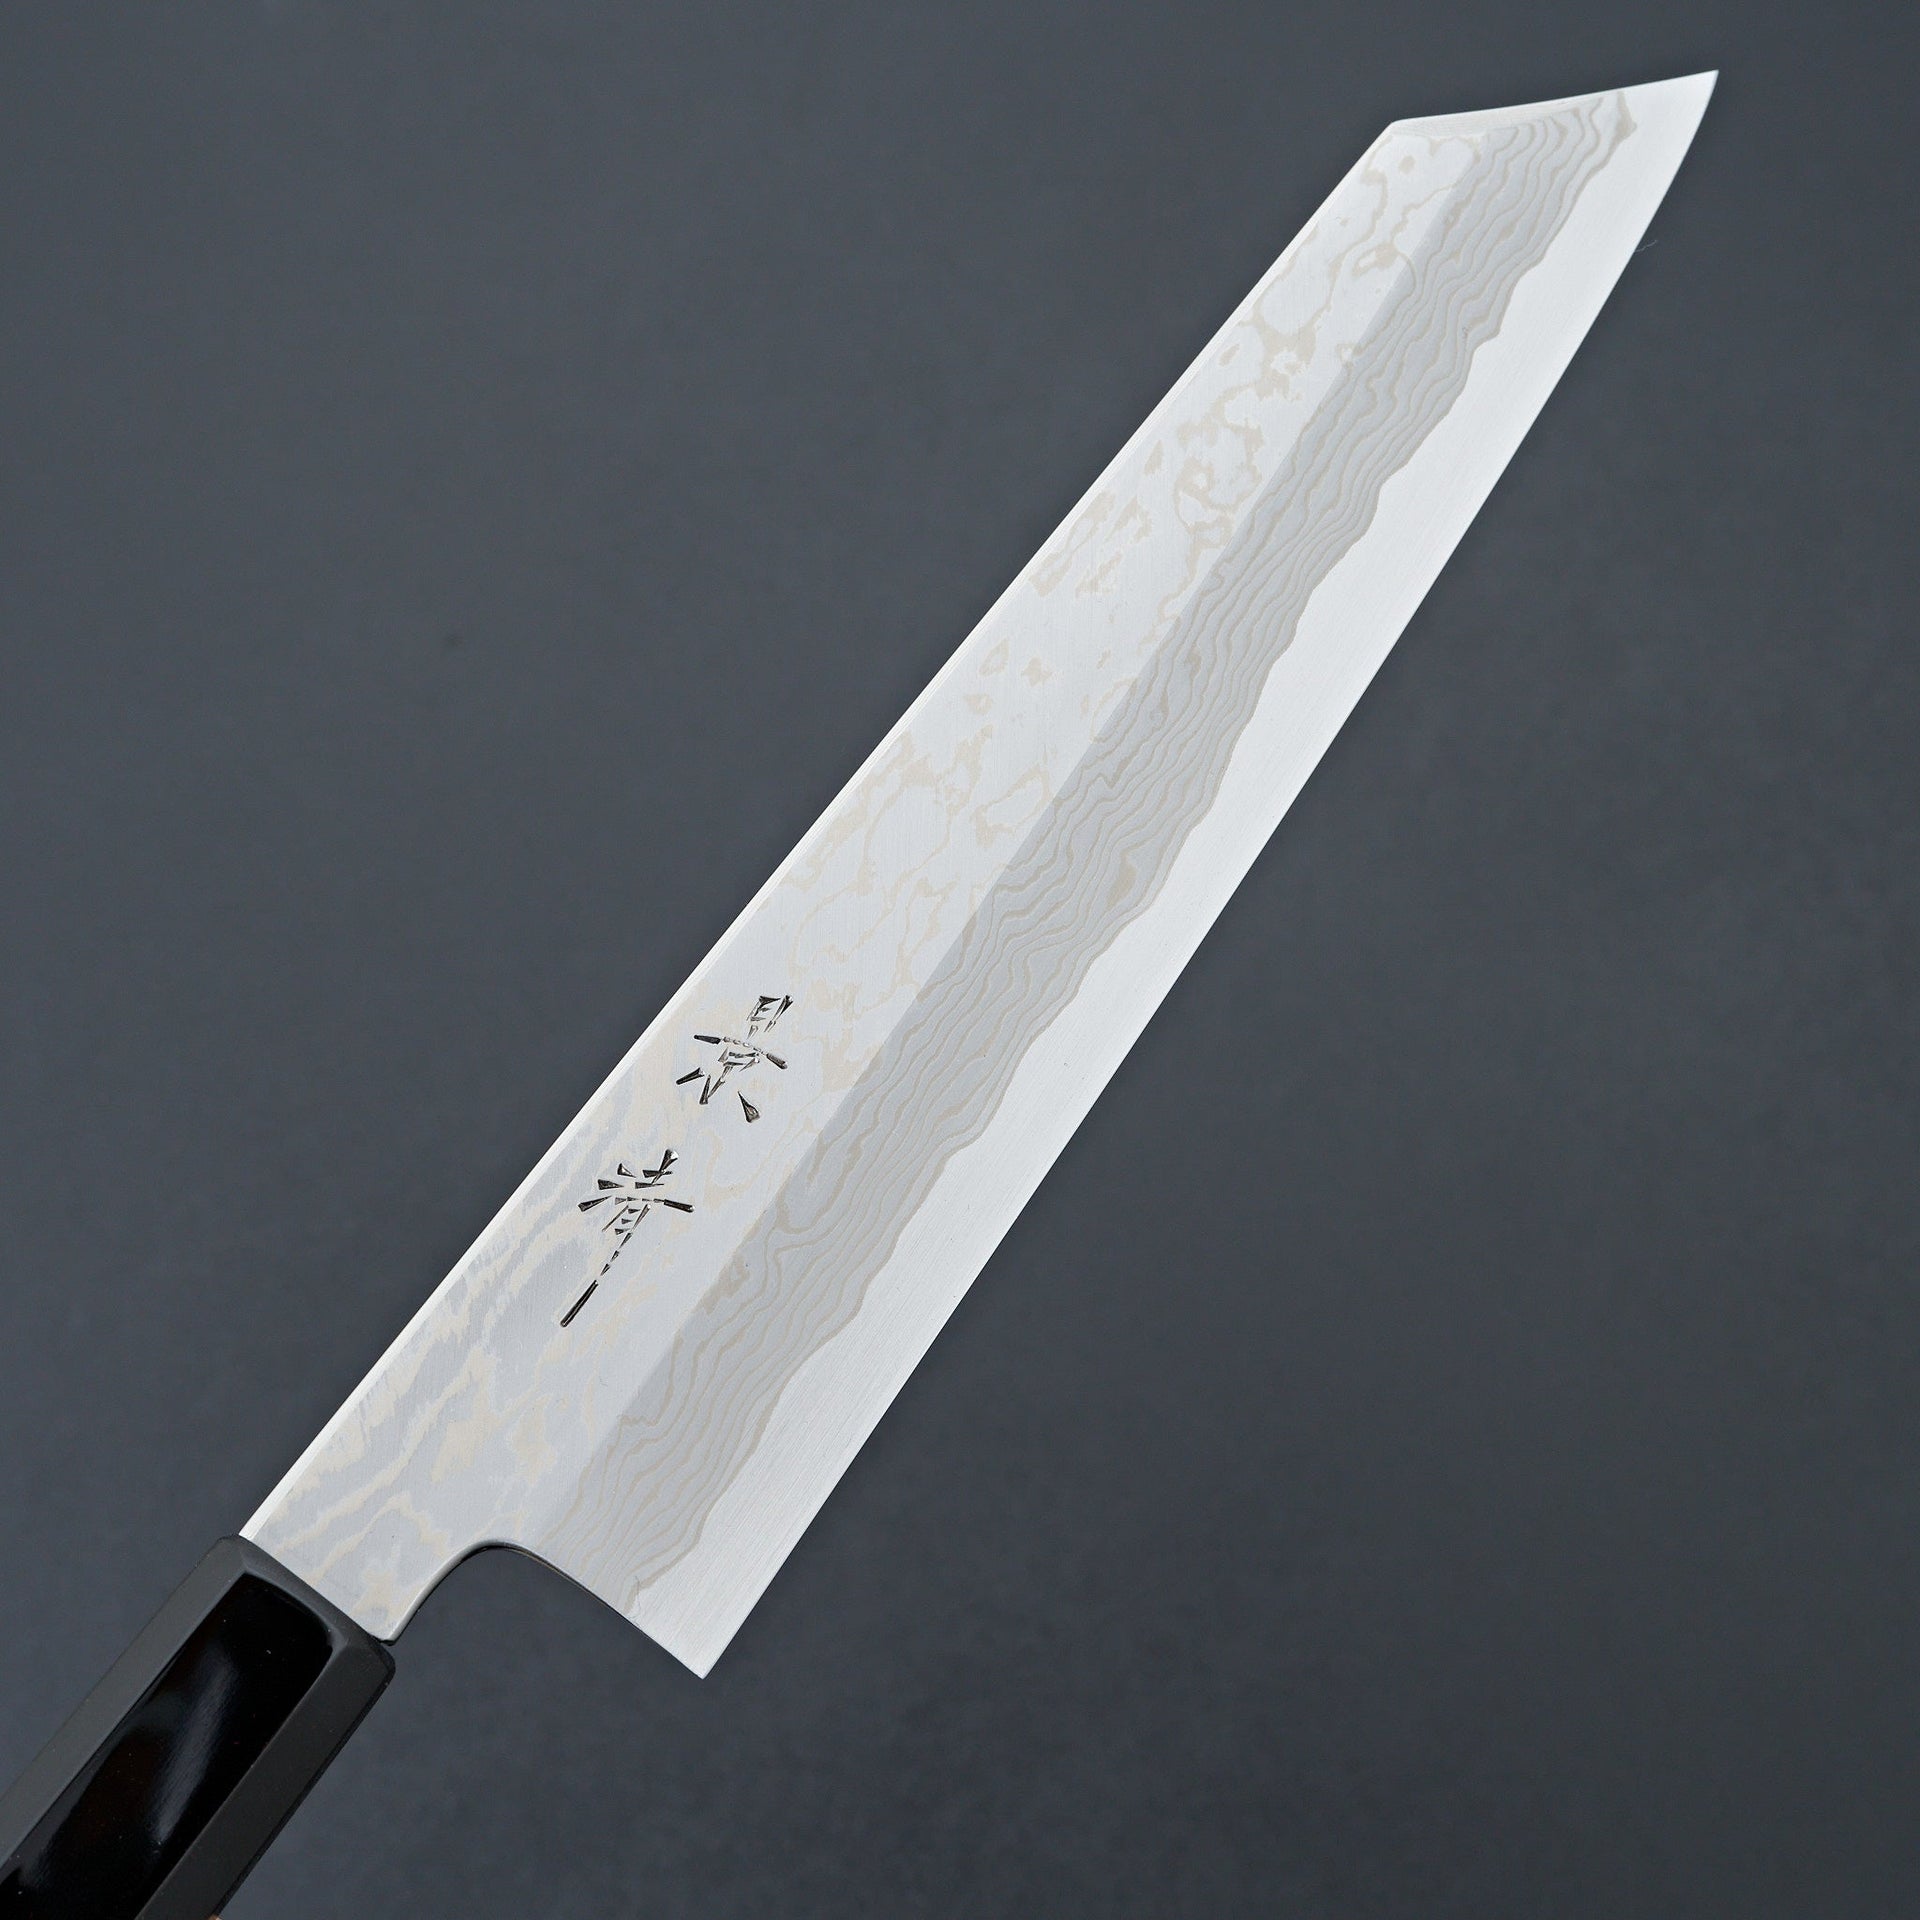 Kagekiyo Blue 1 Stainless Damascus Kiritsuke 240mm-Knife-Kagekiyo-Carbon Knife Co